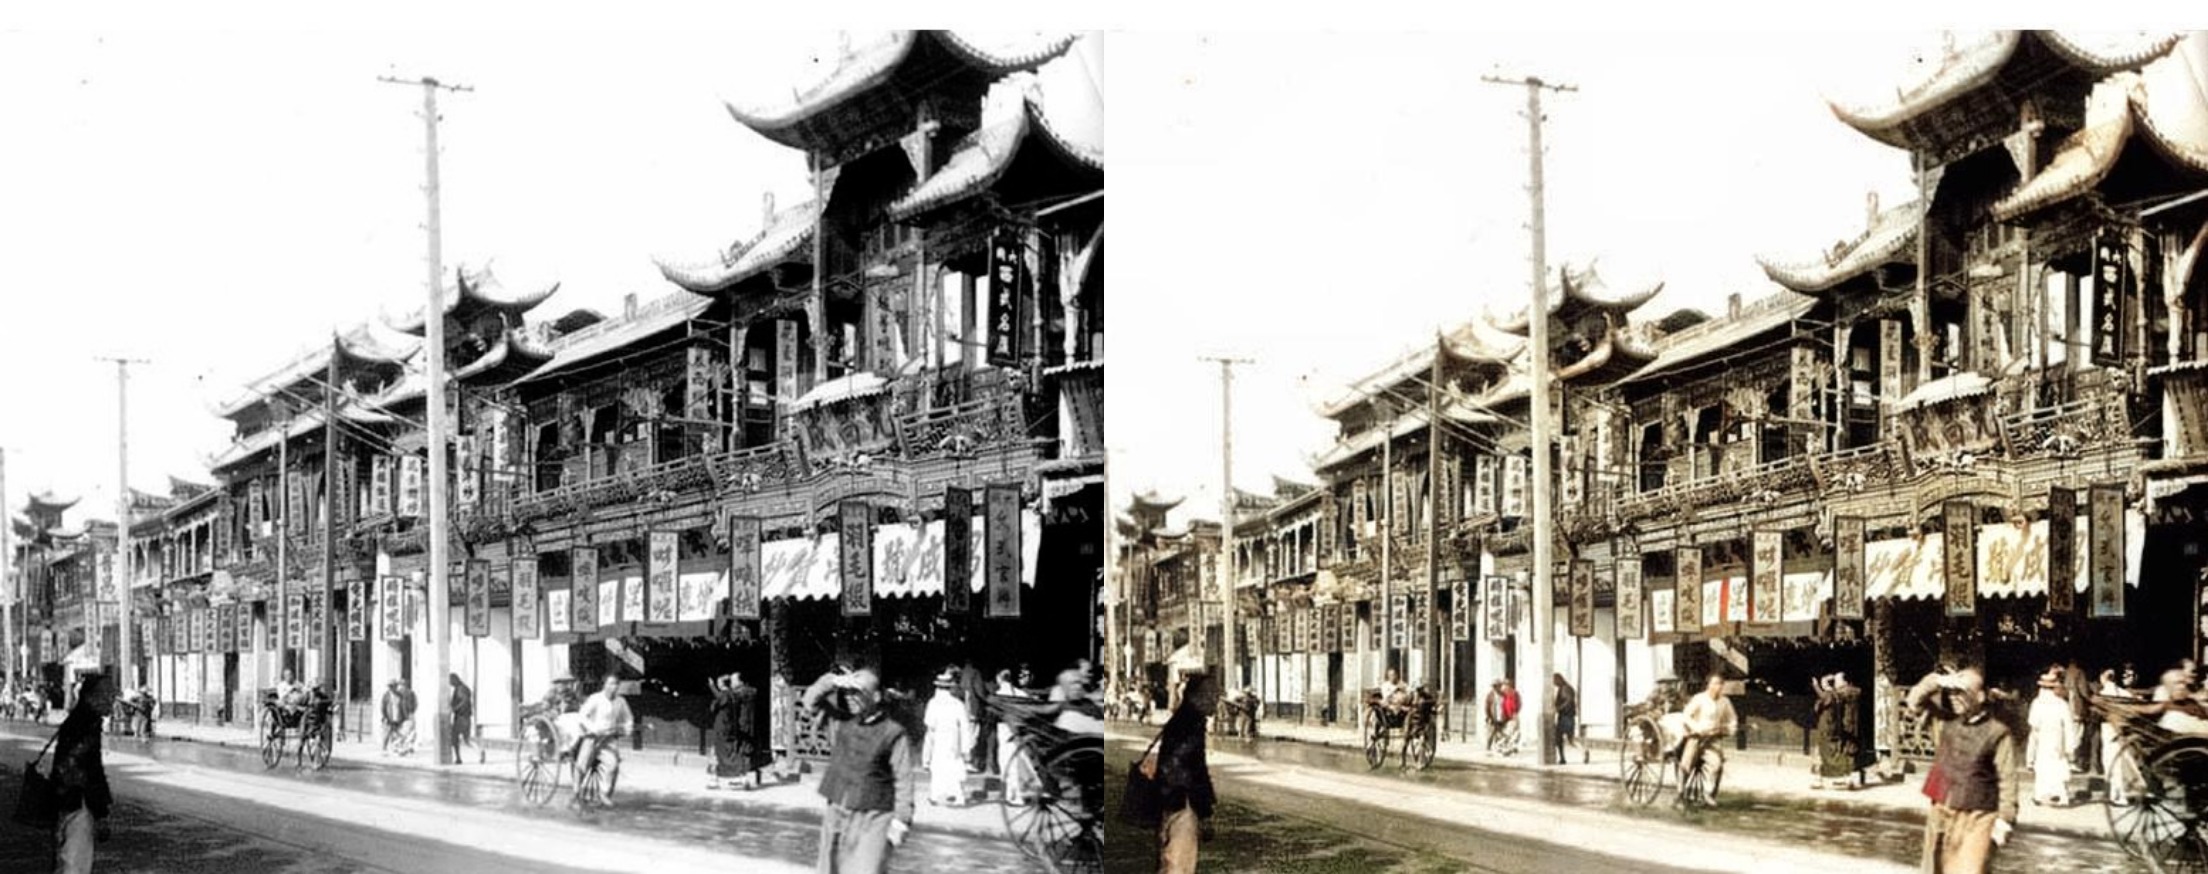 上海南京路 colorized-image-comparison